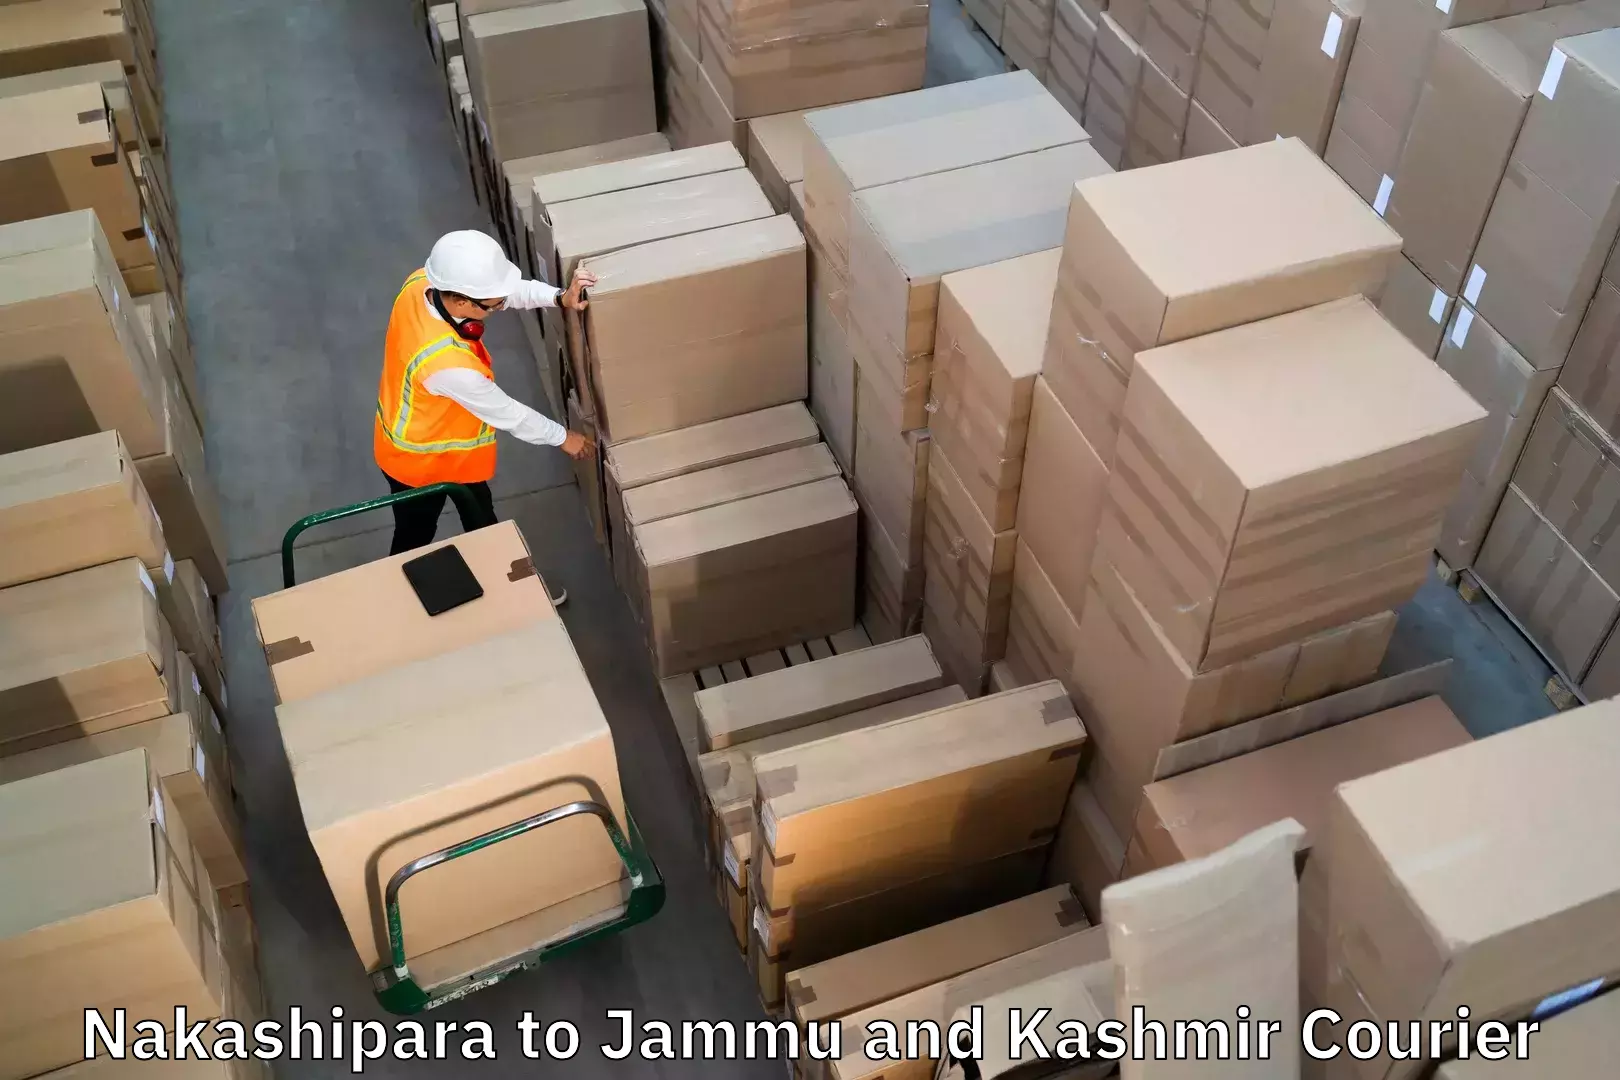 Luggage shipment processing Nakashipara to Srinagar Kashmir